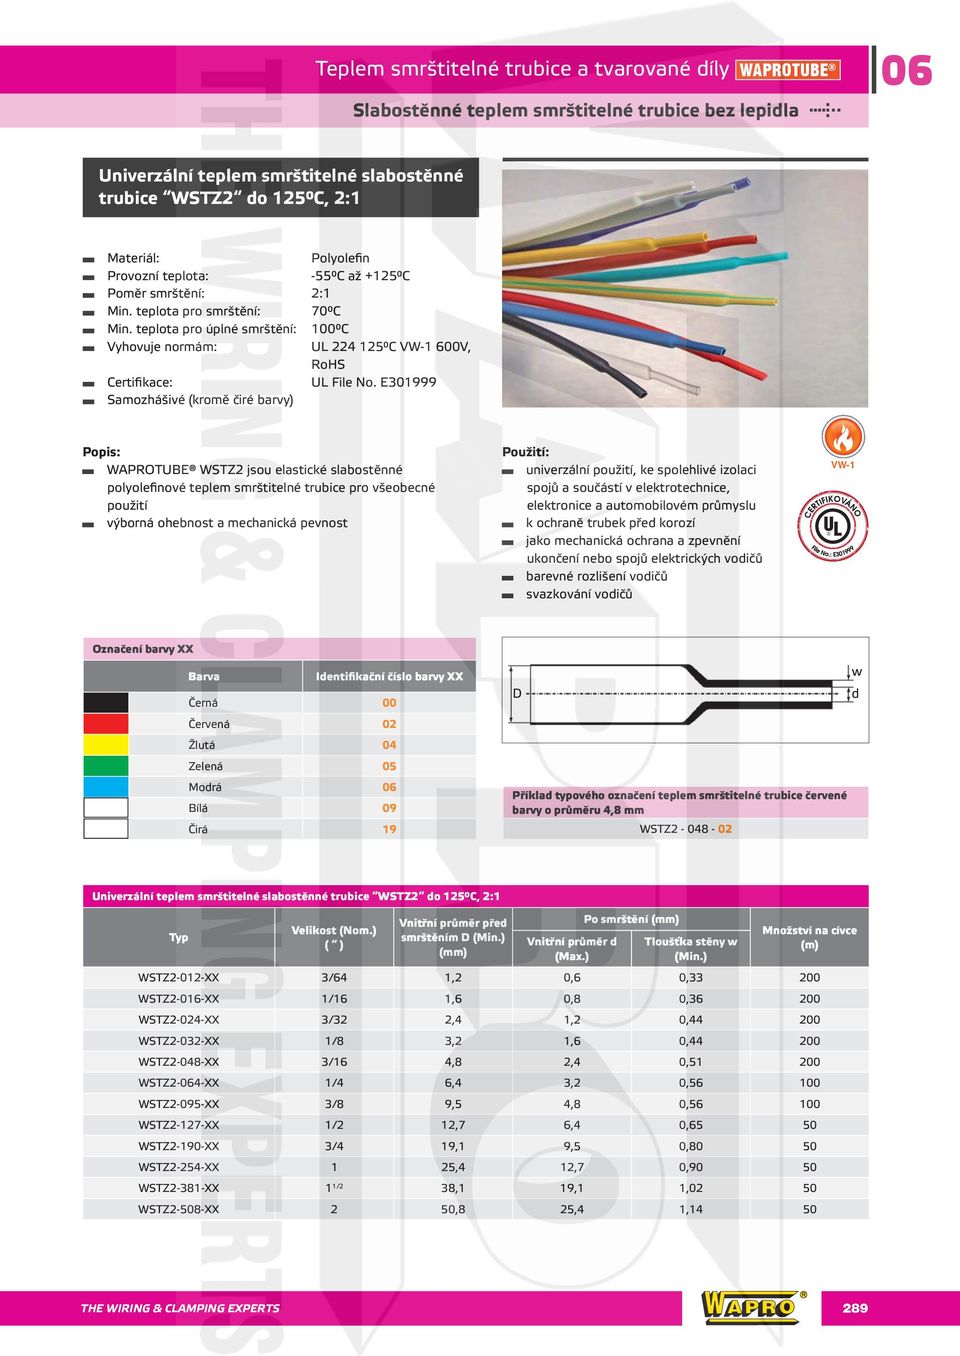 E301999 Samozhášivé (kromě čiré barvy) WAPROTUBE WSTZ2 jsou elastické slabostěnné polyolefinové teplem smrštitelné trubice pro všeobecné použití výborná ohebnost a mechanická pevnost univerzální